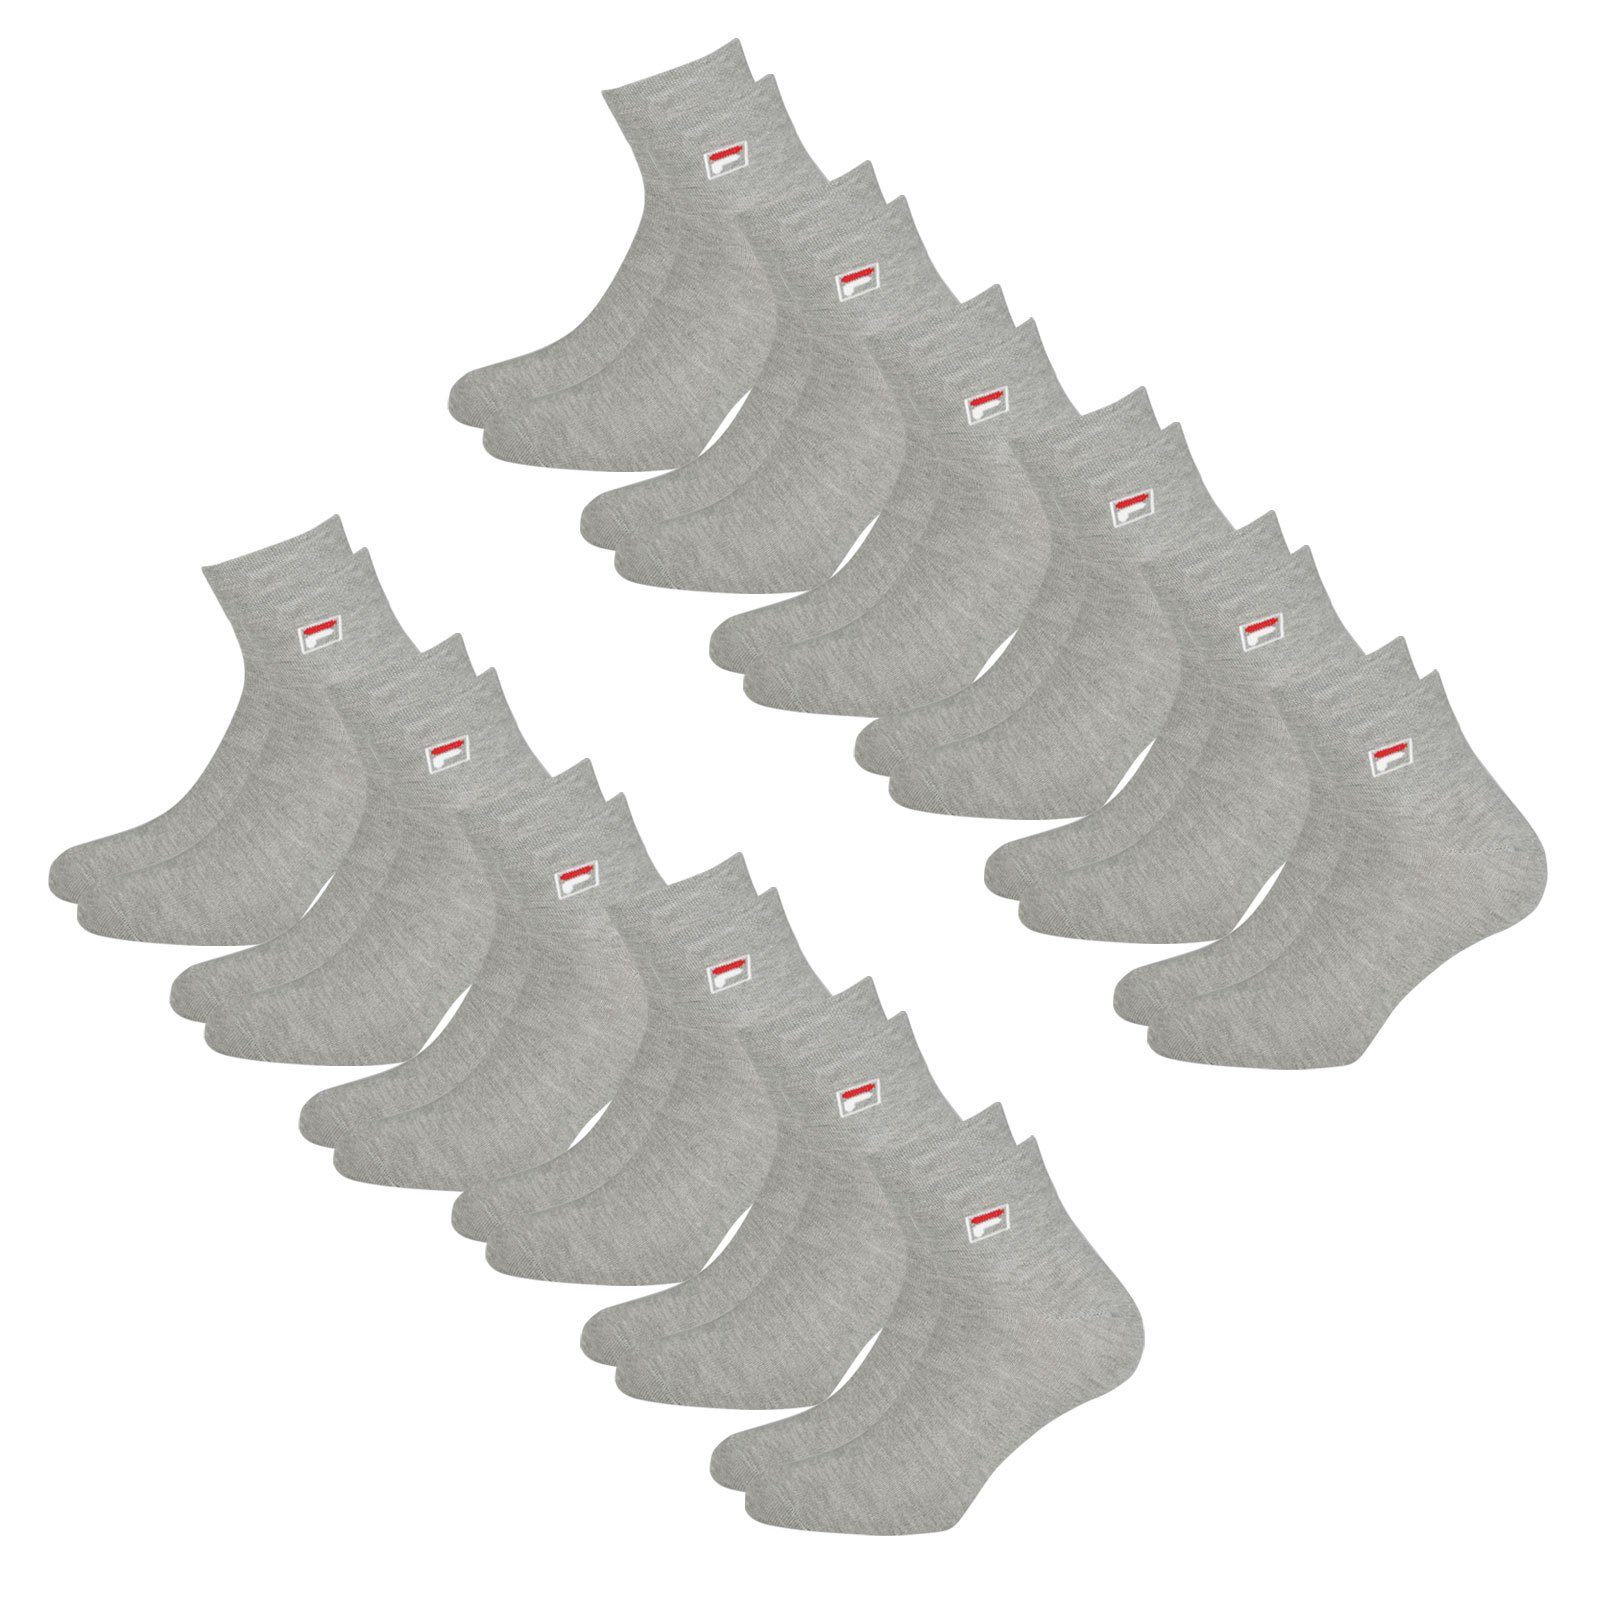 Piquebund mit Sportsocken (12-Paar) elastischem grey Quarter 400 Fila Socken